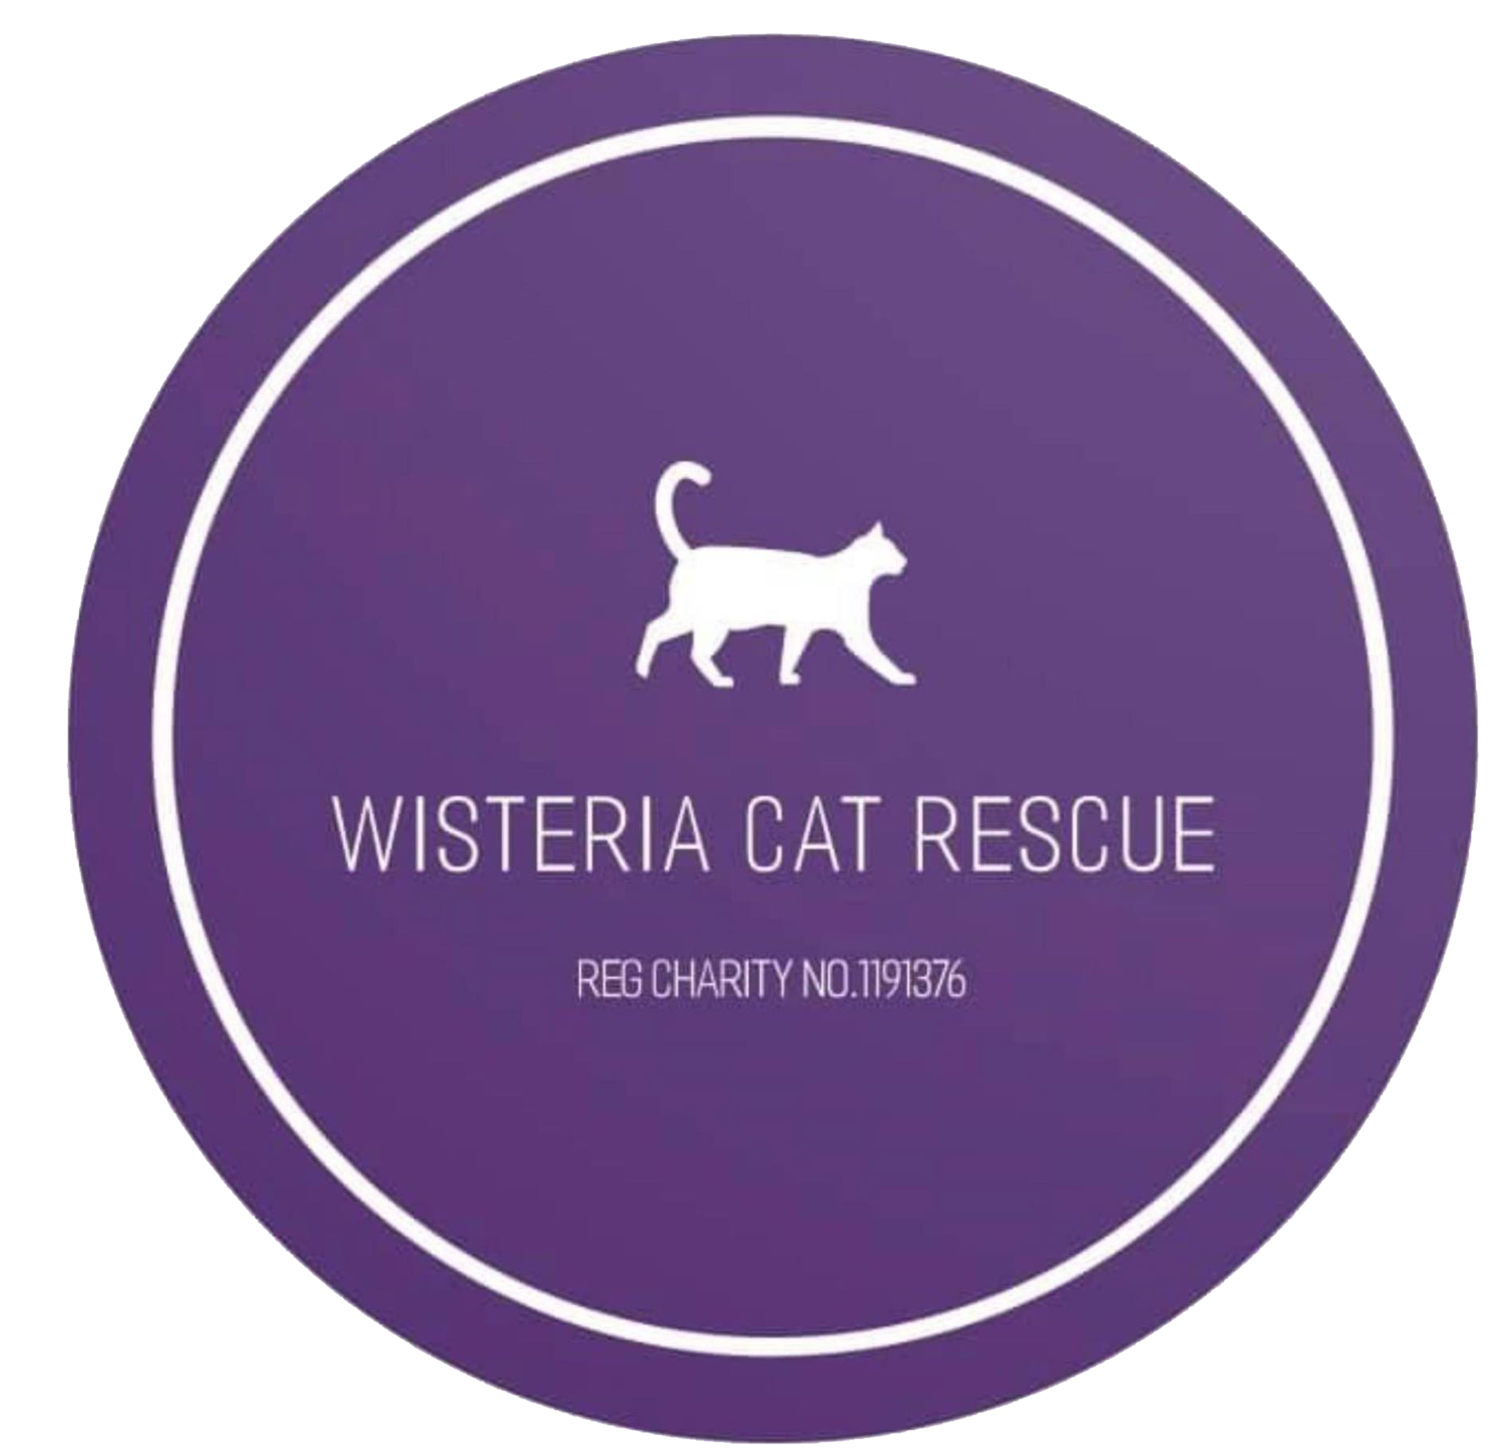 Wisteria Cat Rescue